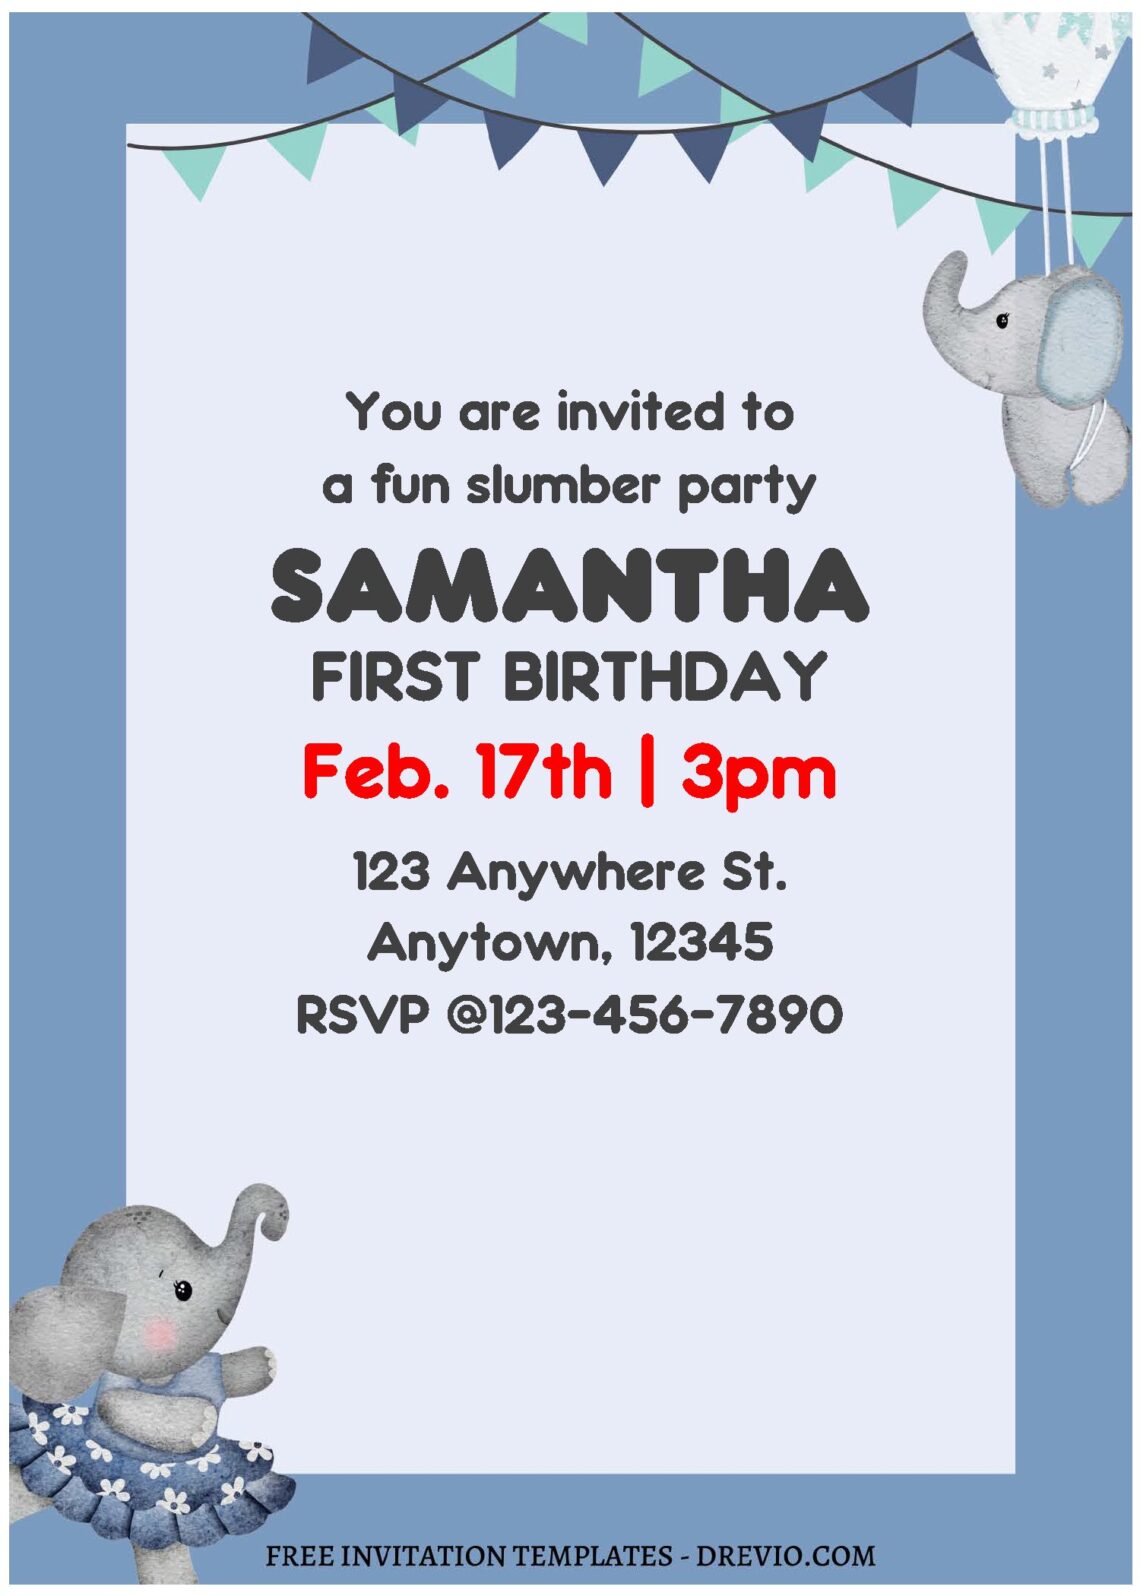 (Free Editable PDF) Little Peanut Elephant Birthday Invitation Templates B